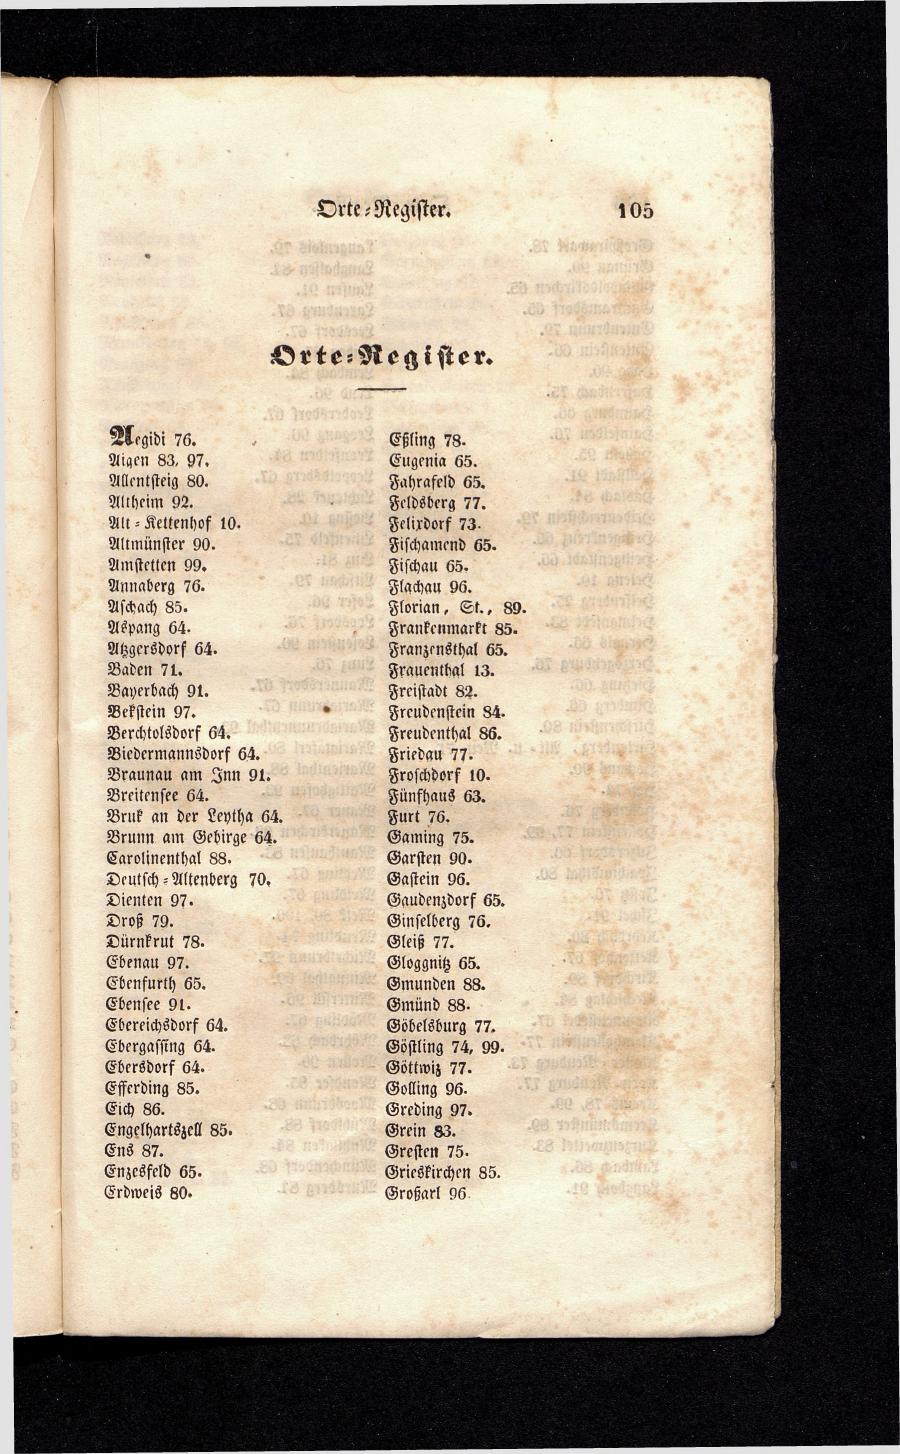 Grosses Adressbuch der Kaufleute. No. 13. Oesterreich ober u. unter der Enns 1844 - Seite 109